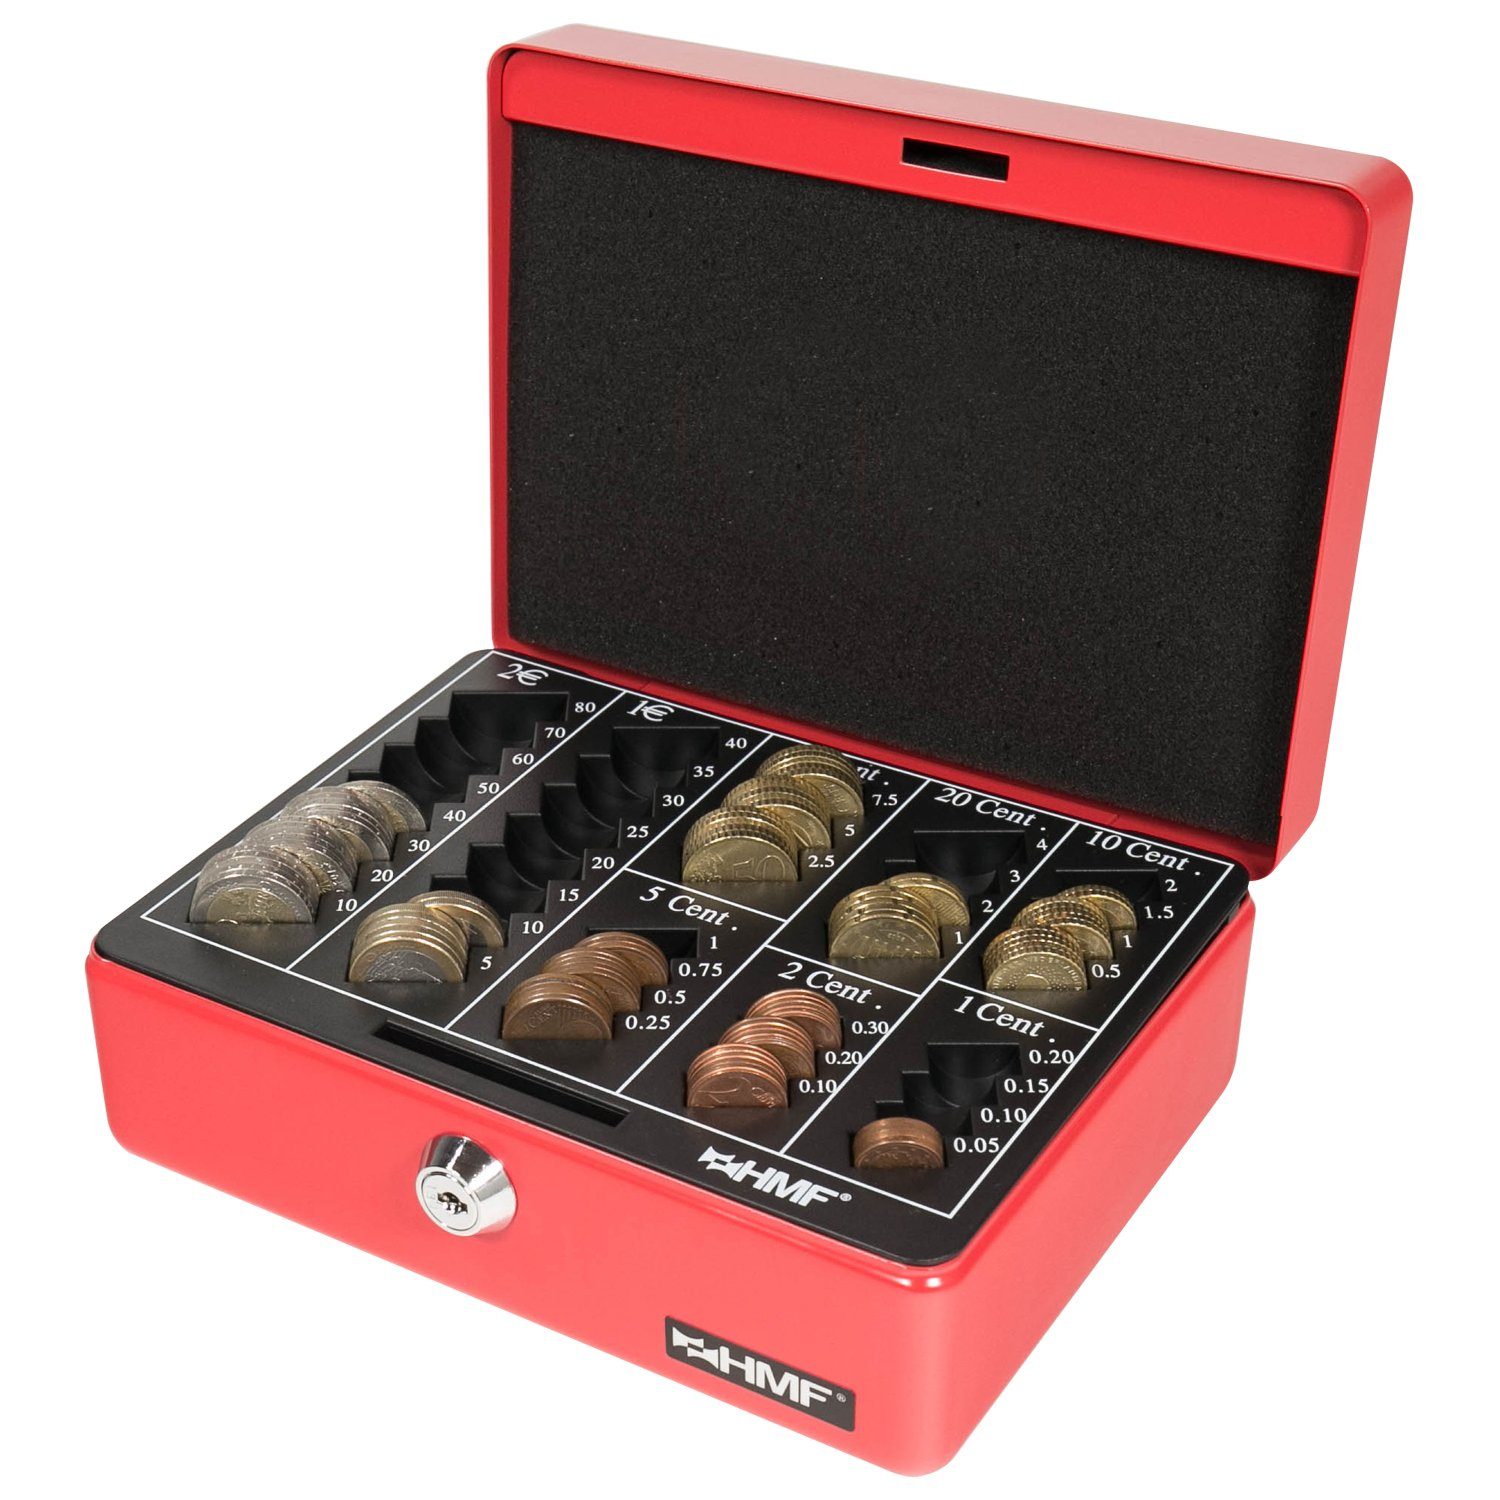 HMF Geldkassette Abschließbare mit mit cm Bargeldkasse Schlüssel, robuste rot 20x16x9 Geldbox Münzzählbrett